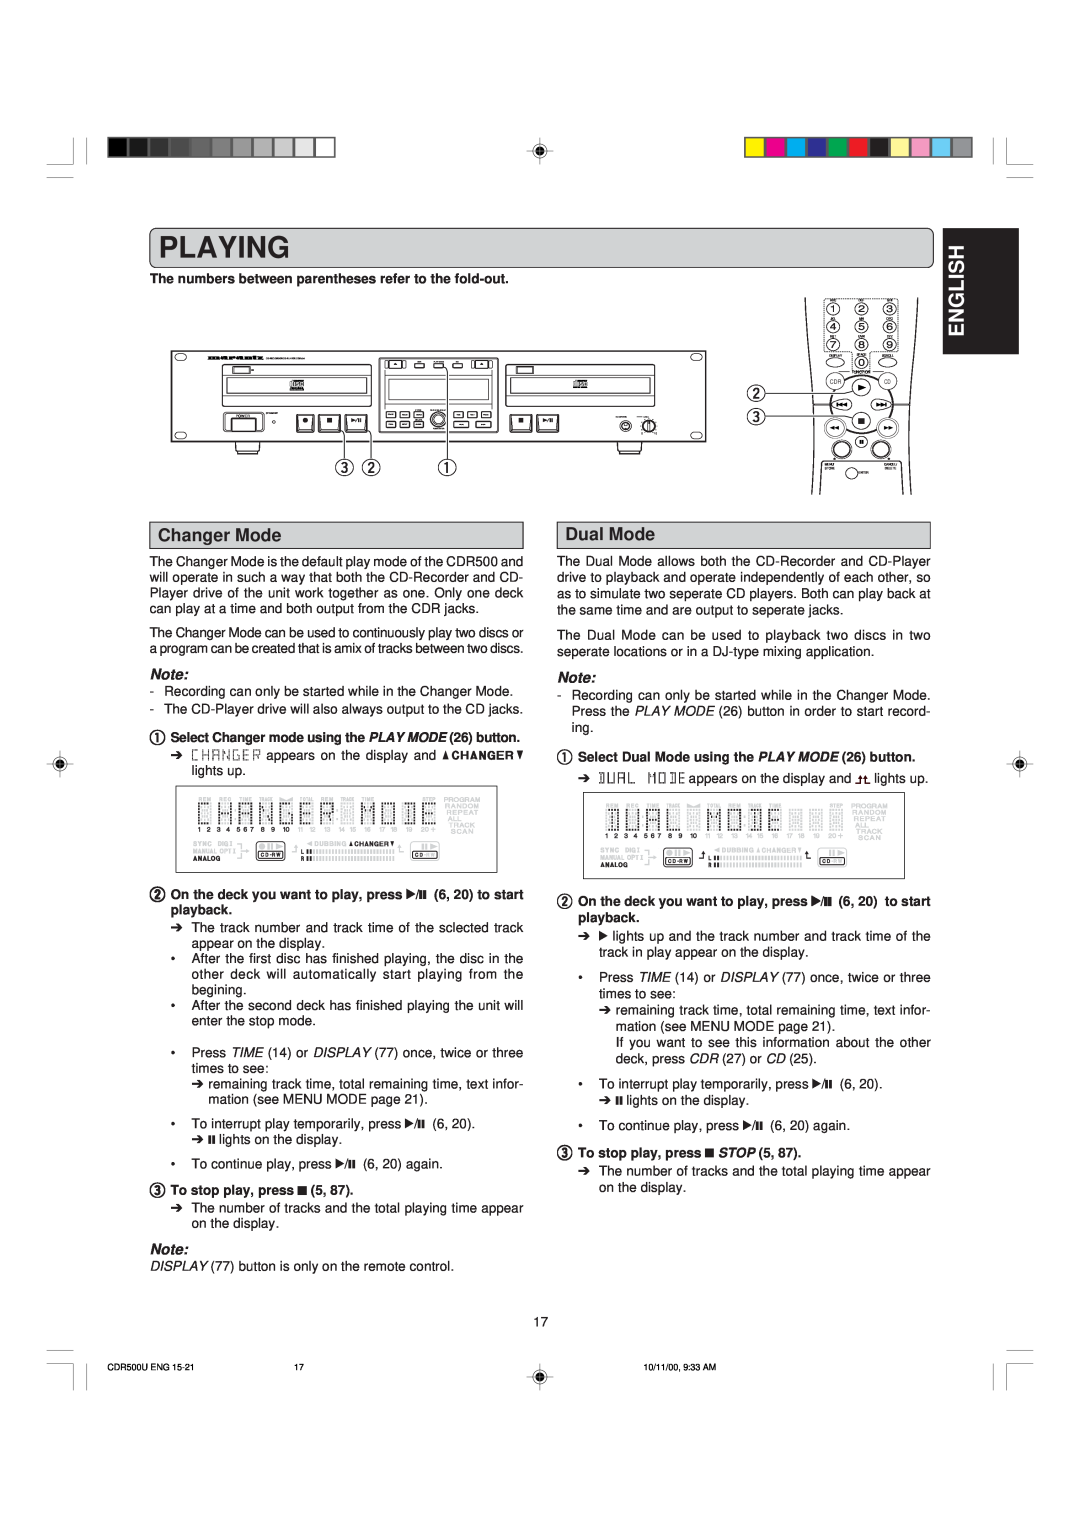 Marantz CDR500 manual Playing, e w q, English, Changer Mode, Dual Mode 